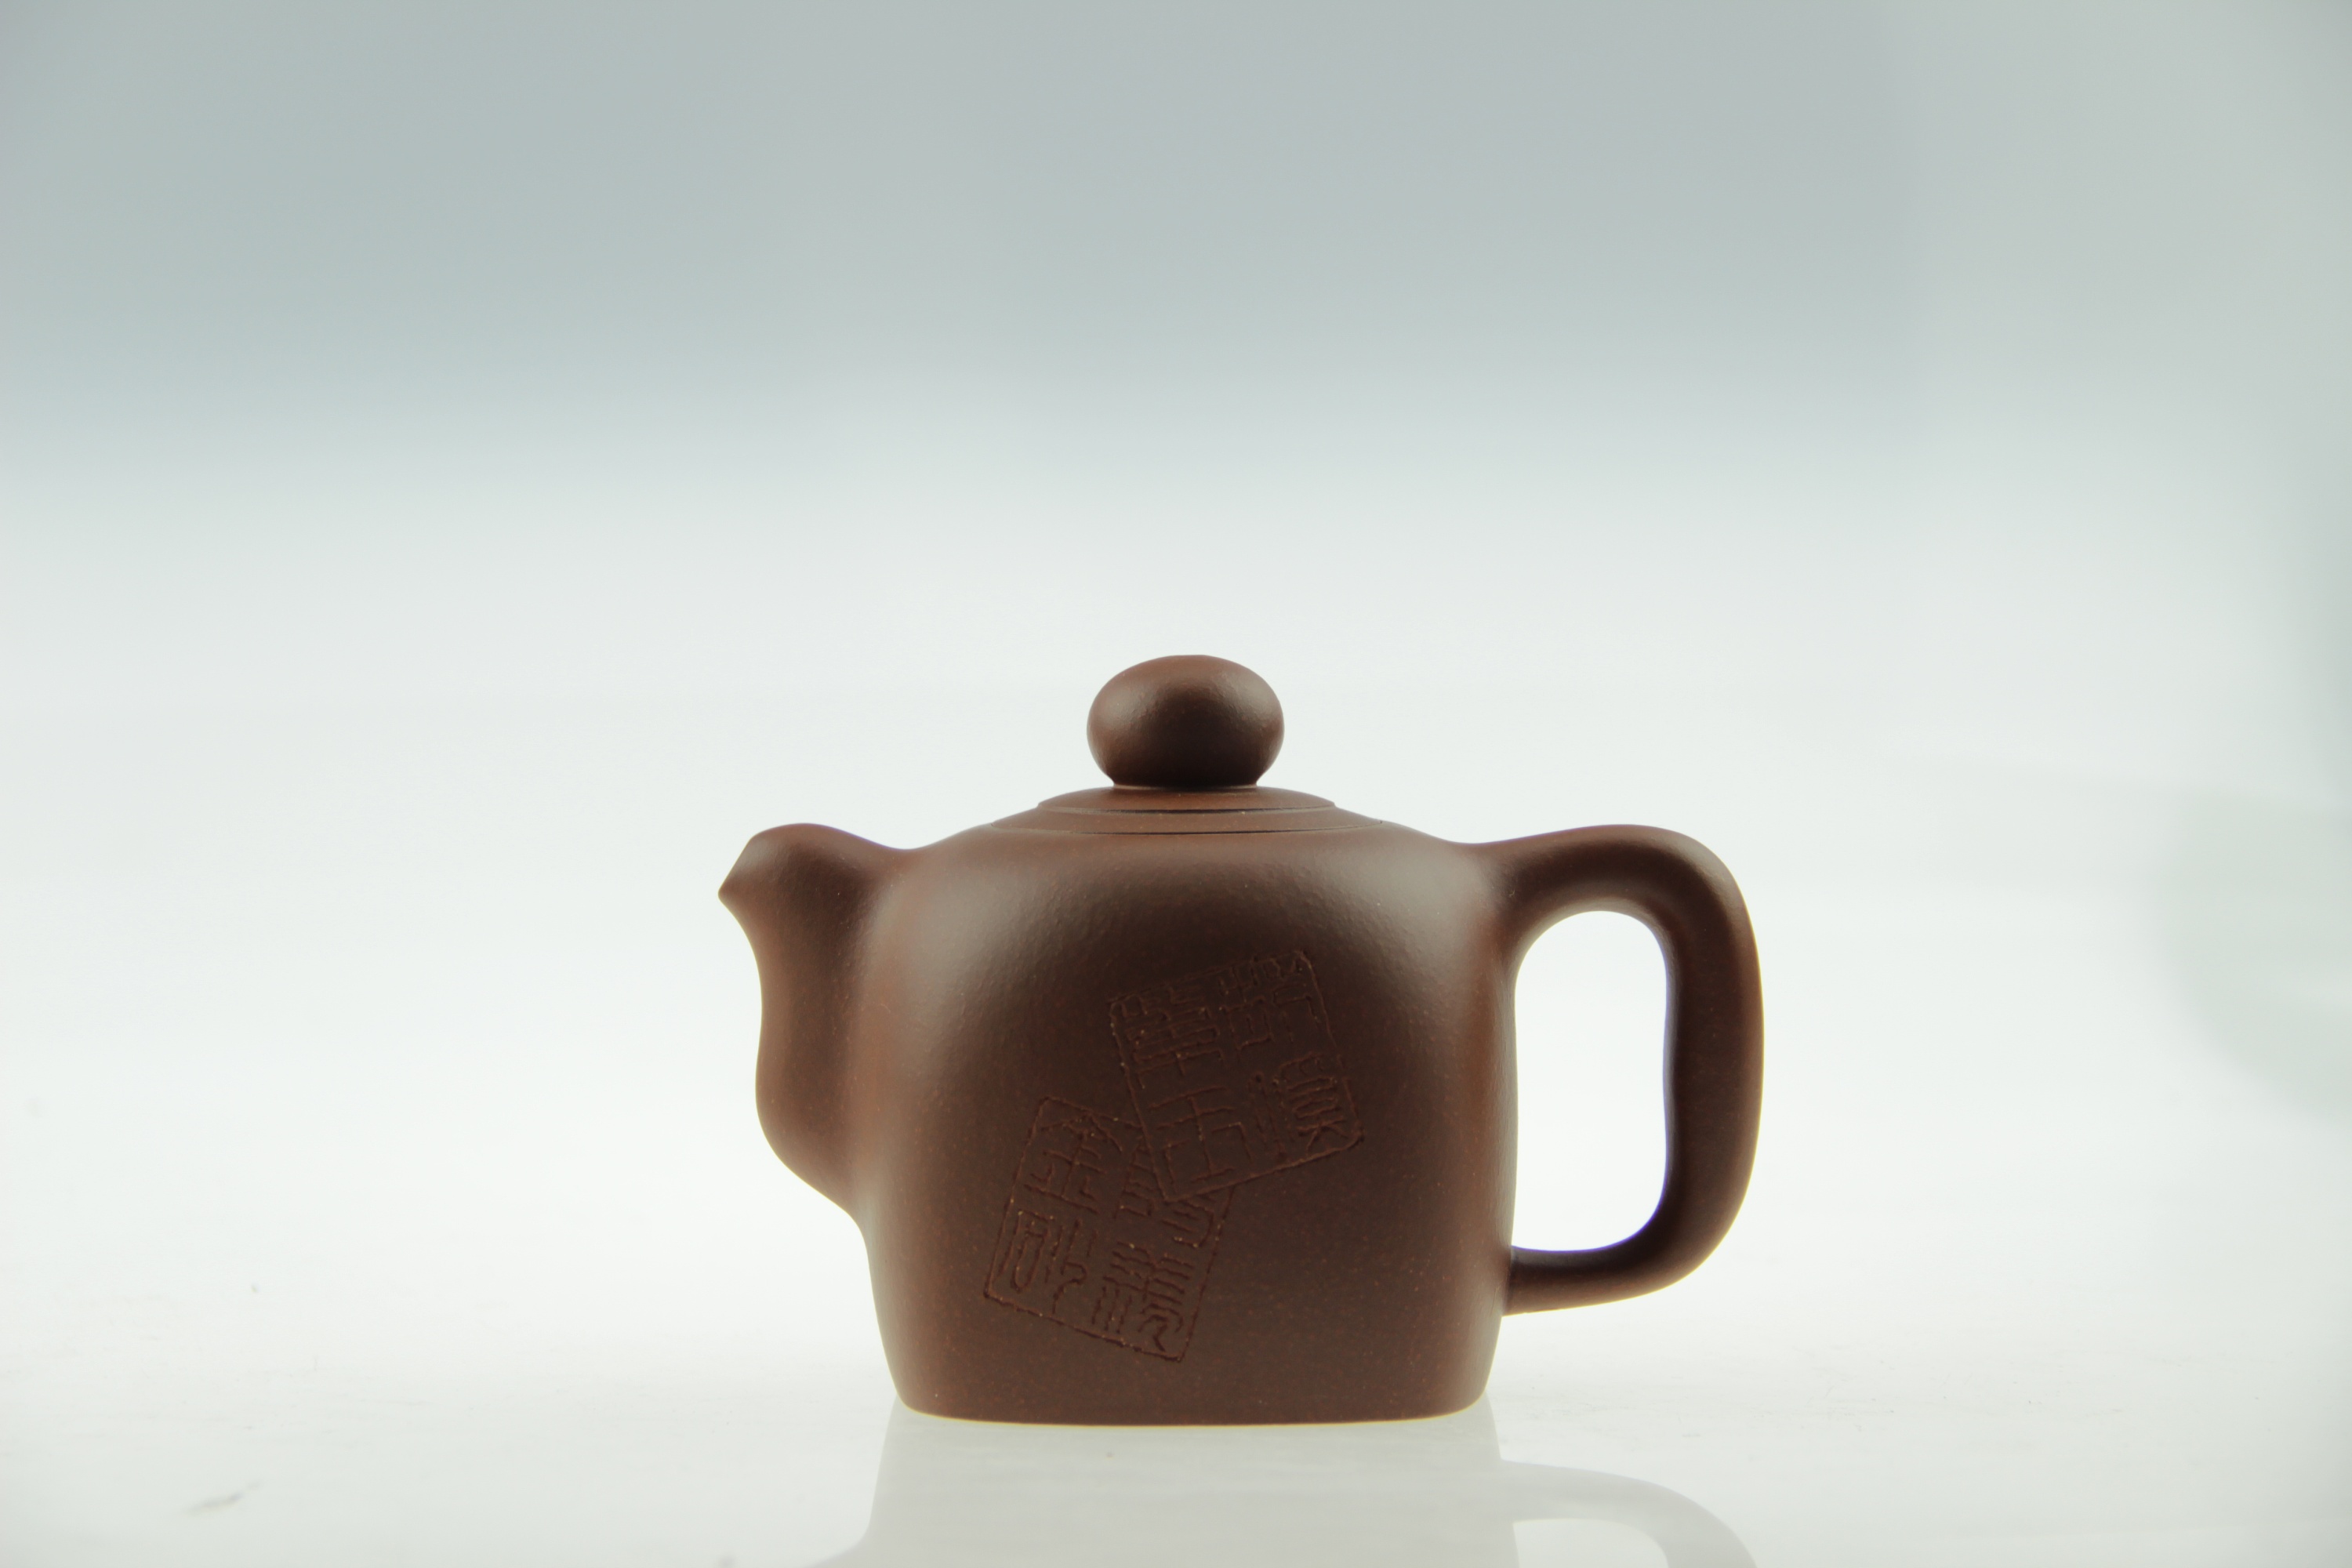 红茶茶饮茶壶茶水摄影图高清摄影大图-千库网